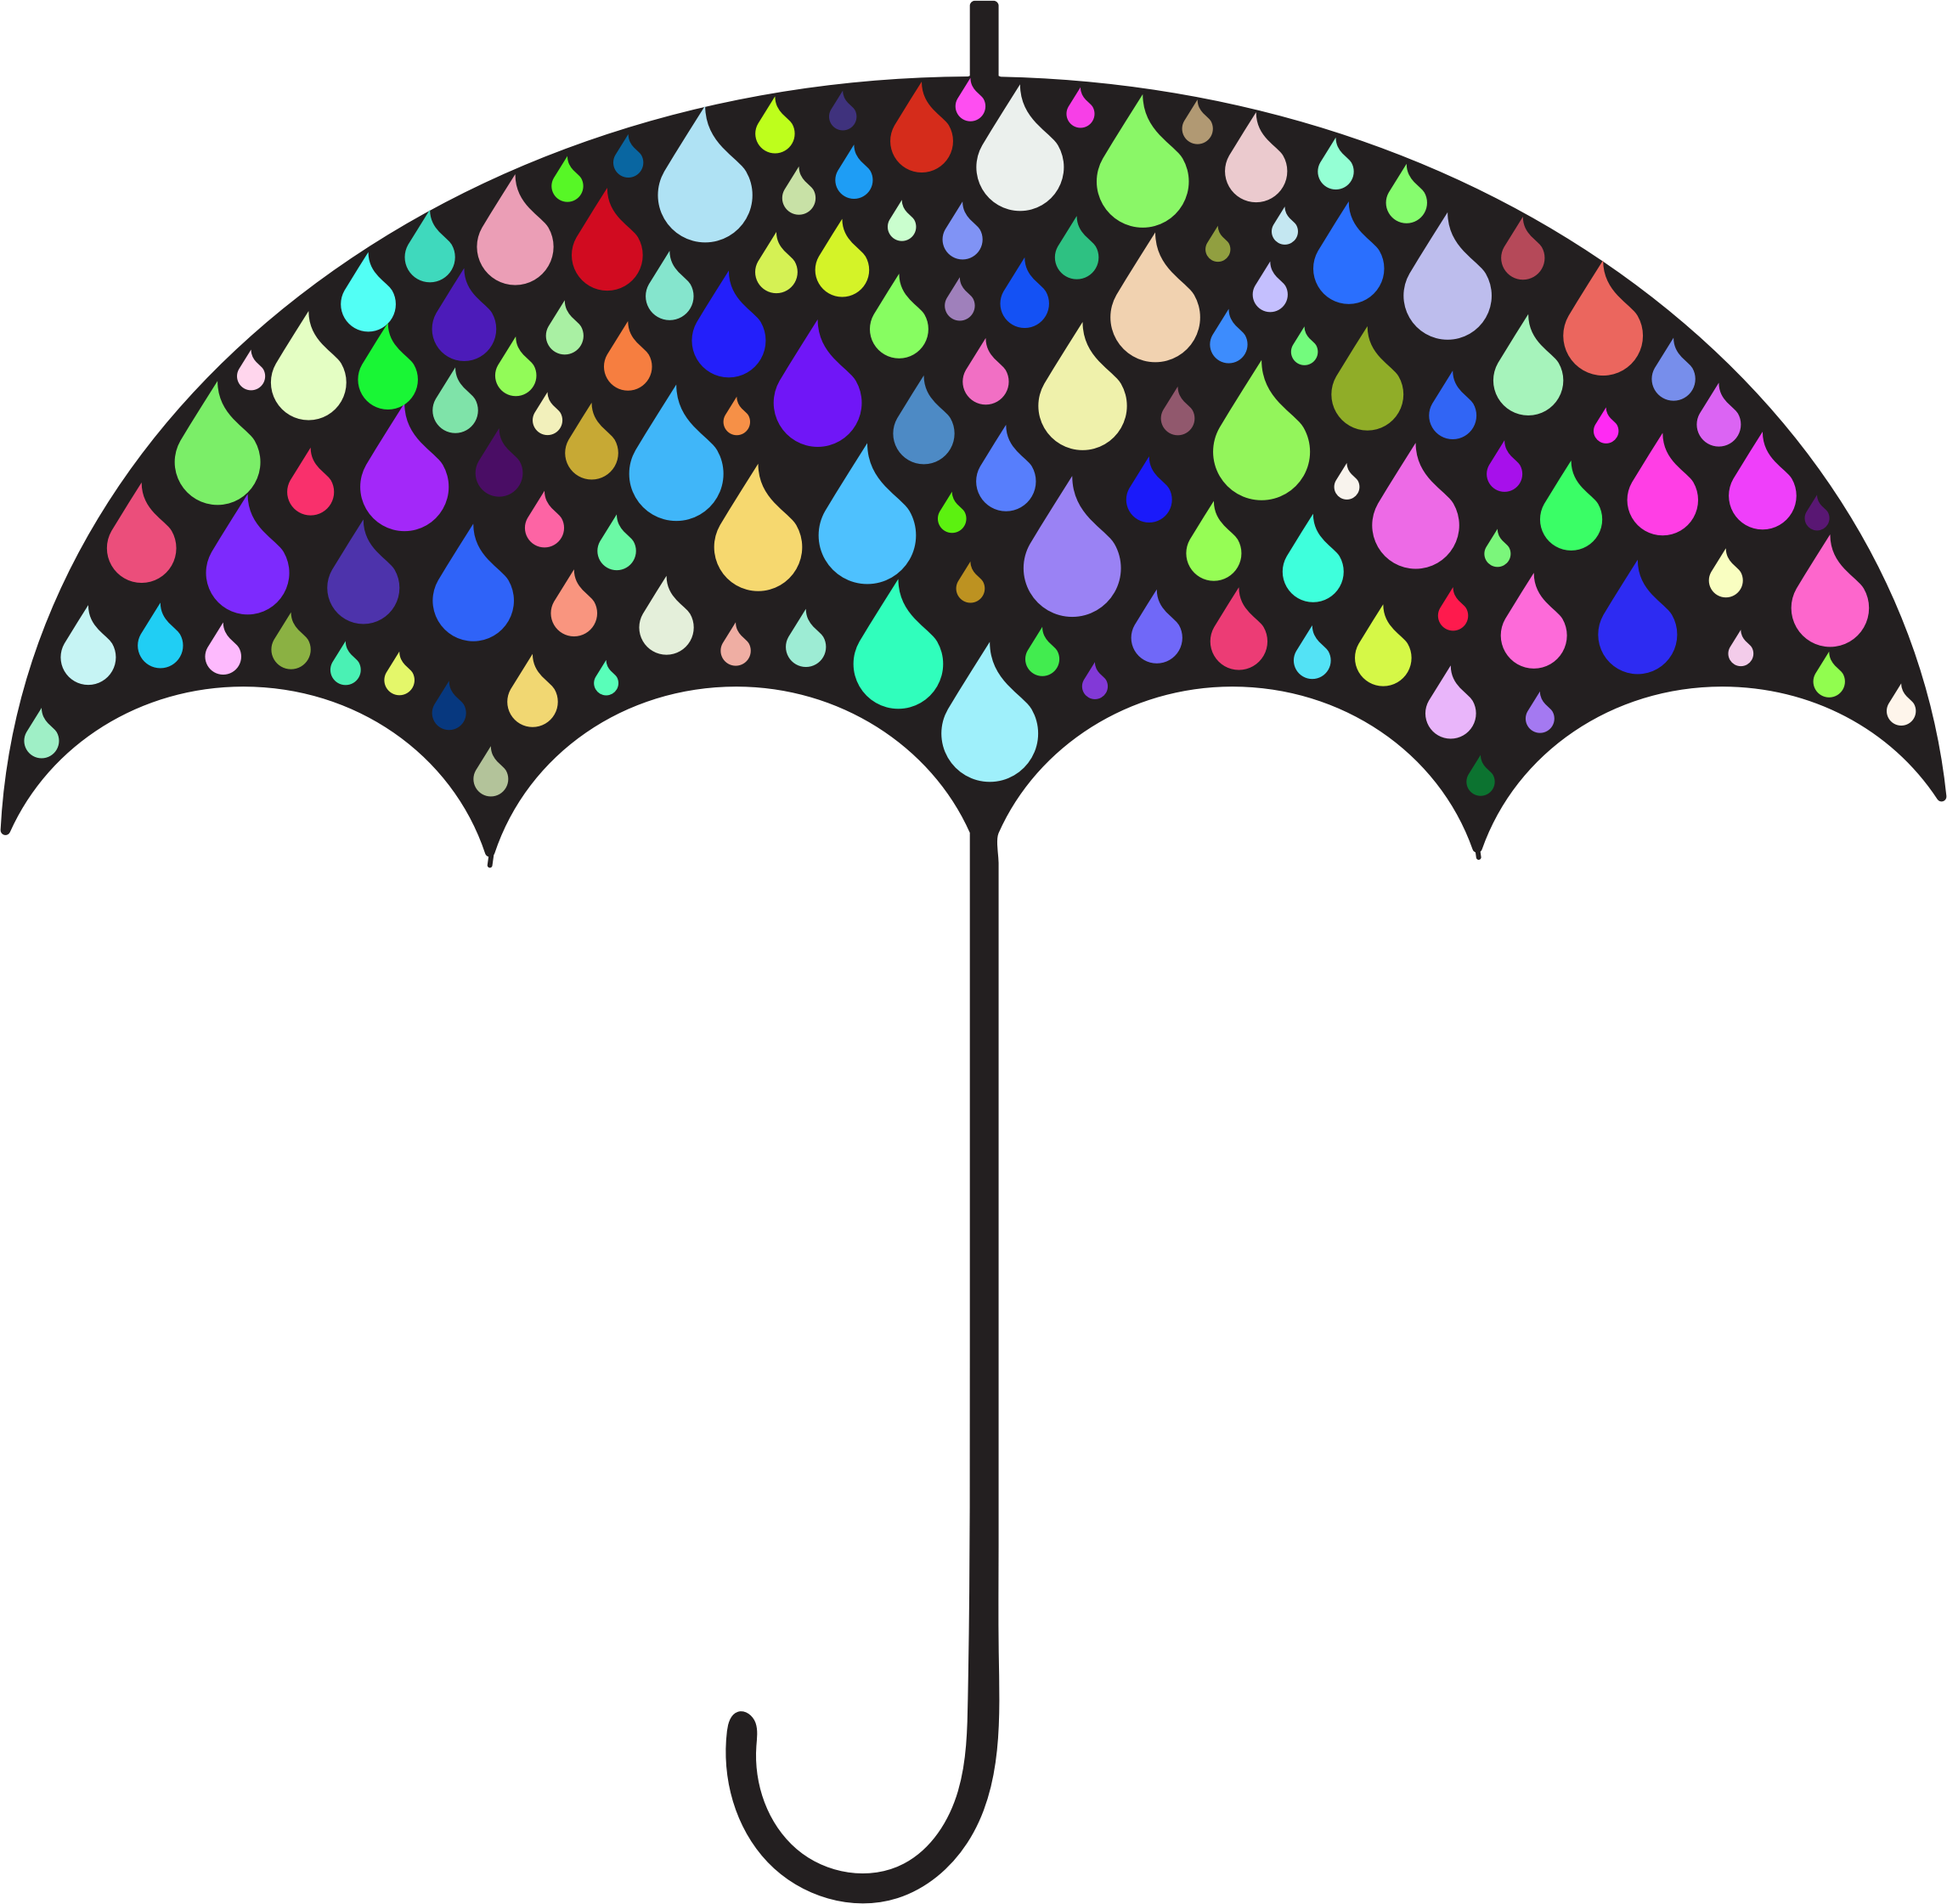 clipart umbrella silhouette